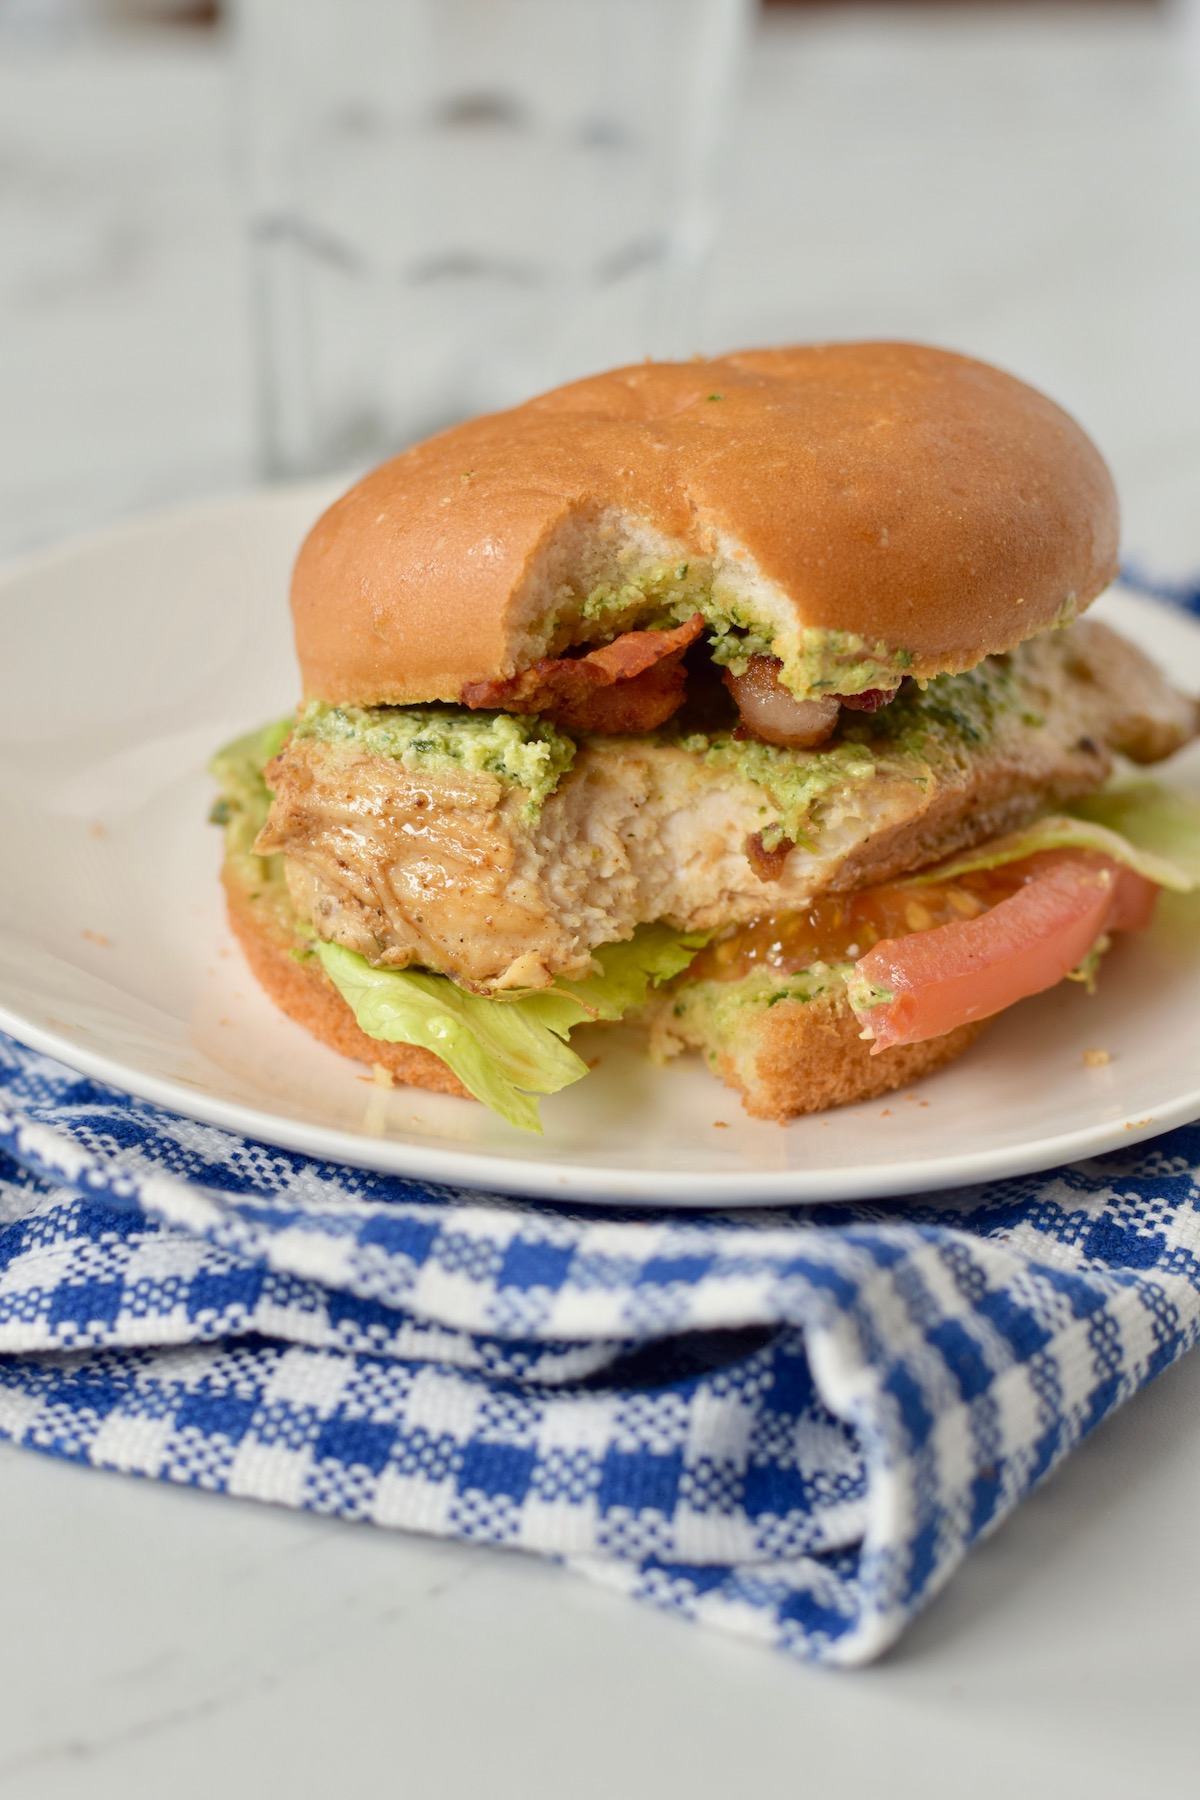 chicken BLT with pesto cream cheese sandwich on gluten free bun